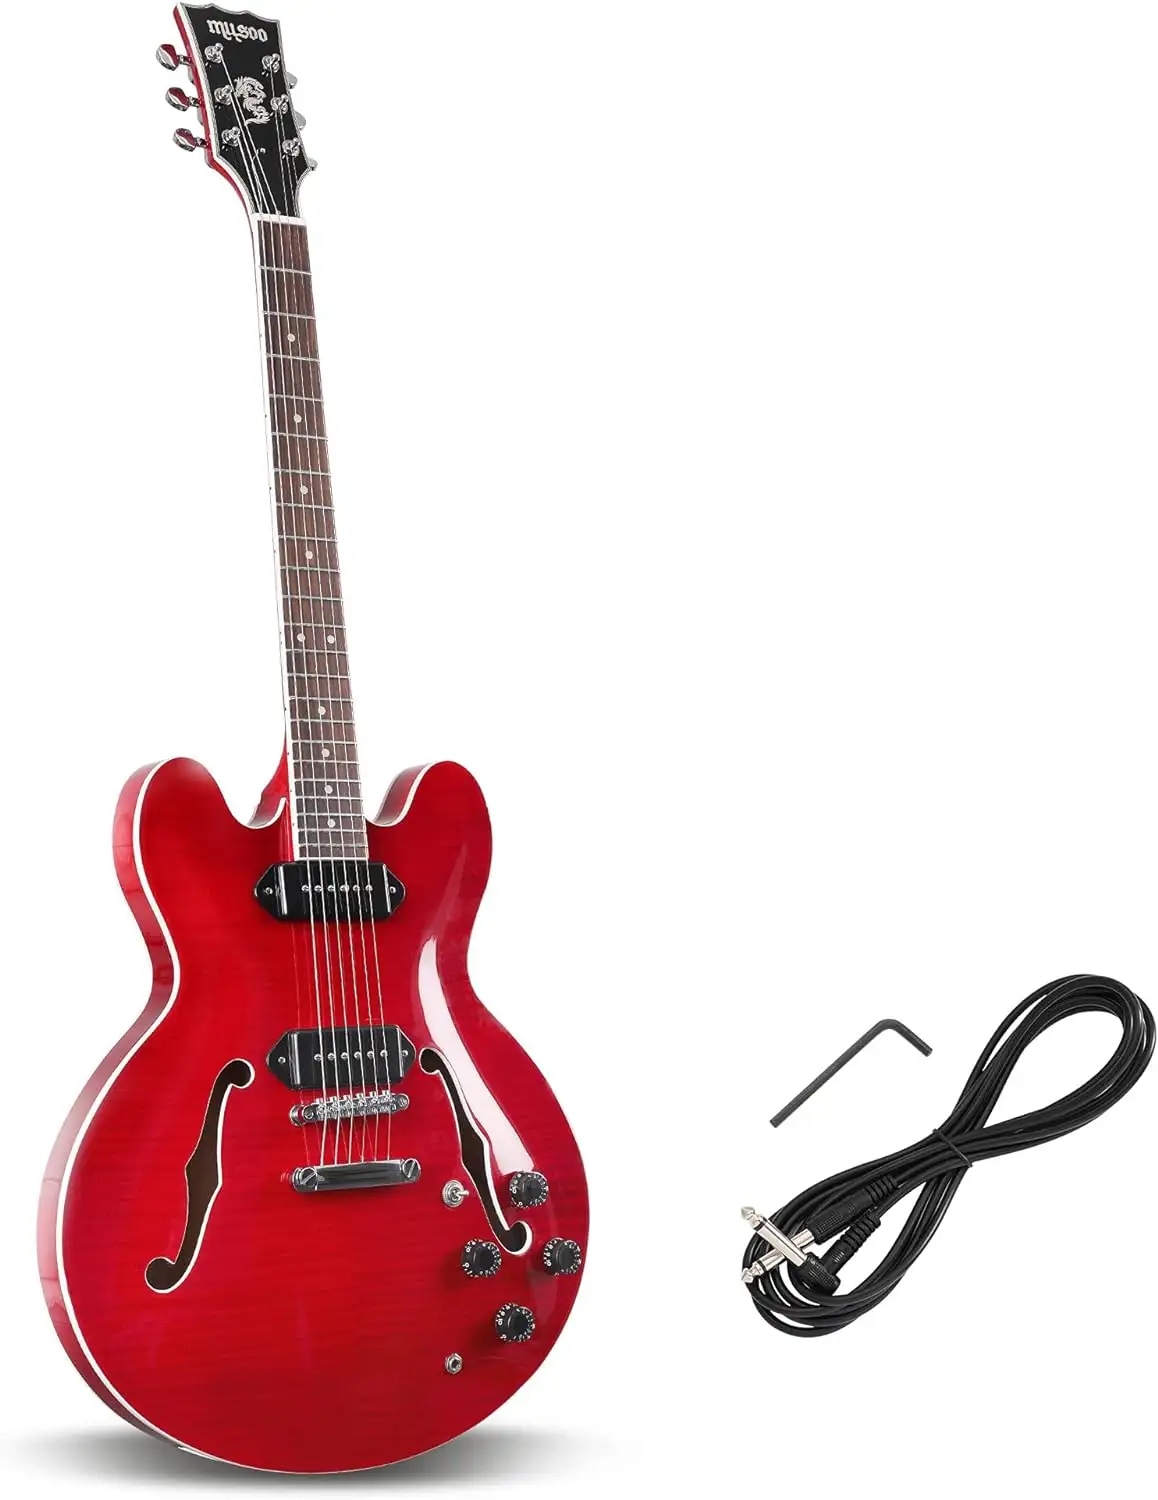 Musoo335スタイルP90ジャズエレクトリックギターフレームメープルトップセミホローボディクロームハードウェア